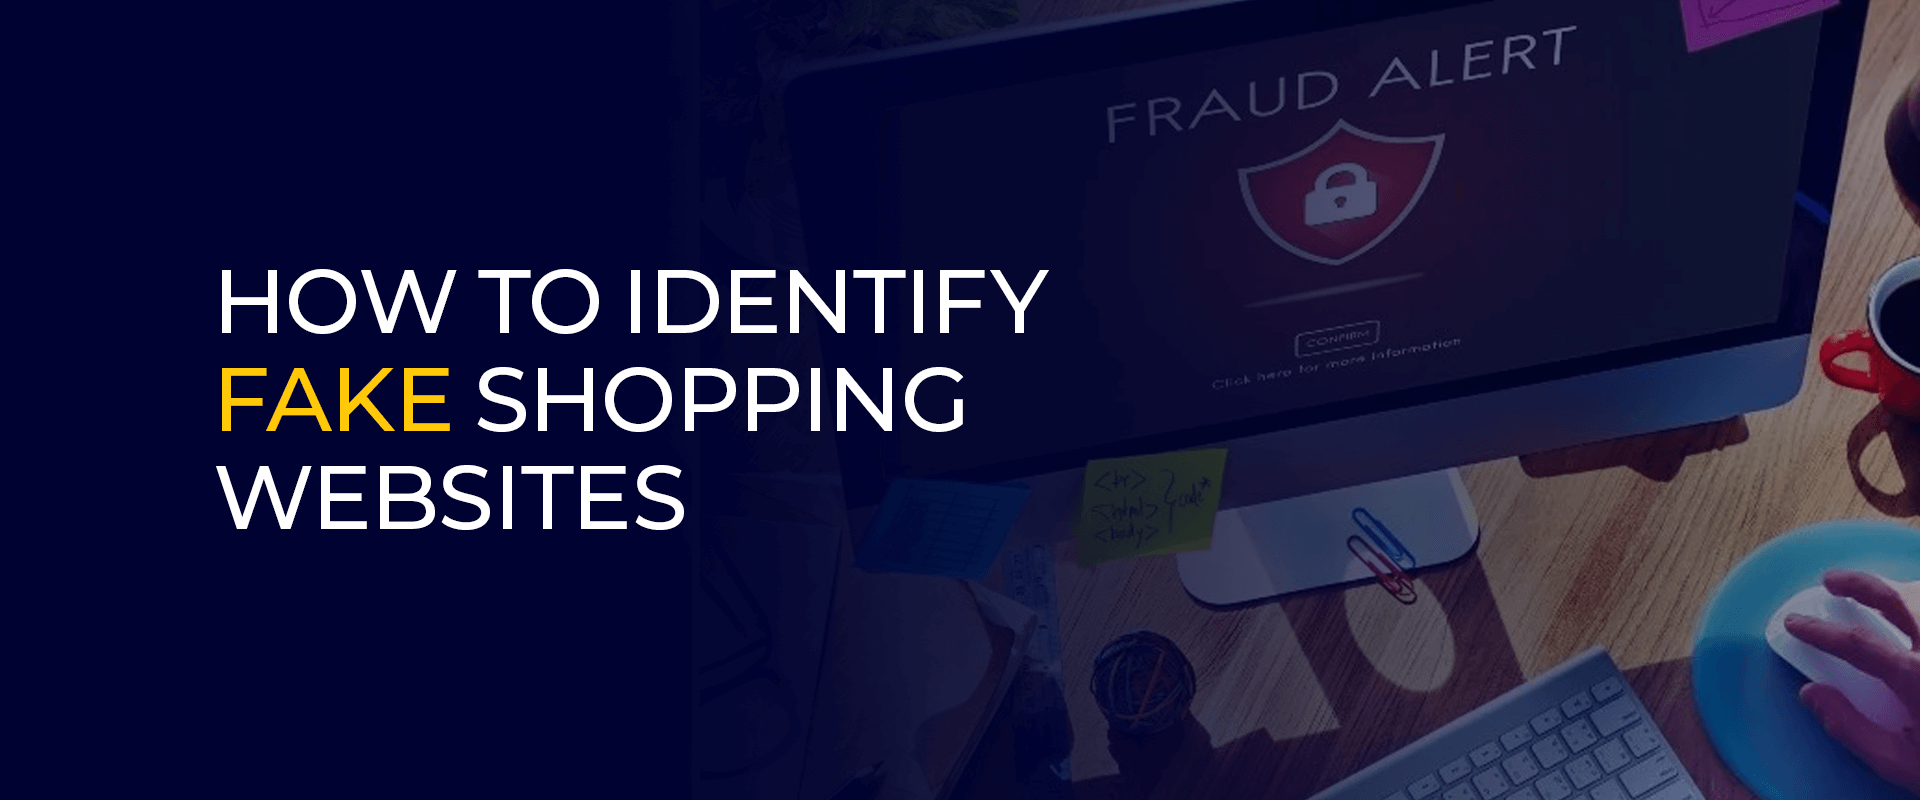 Wéi identifizéieren gefälschte Shopping Websäiten